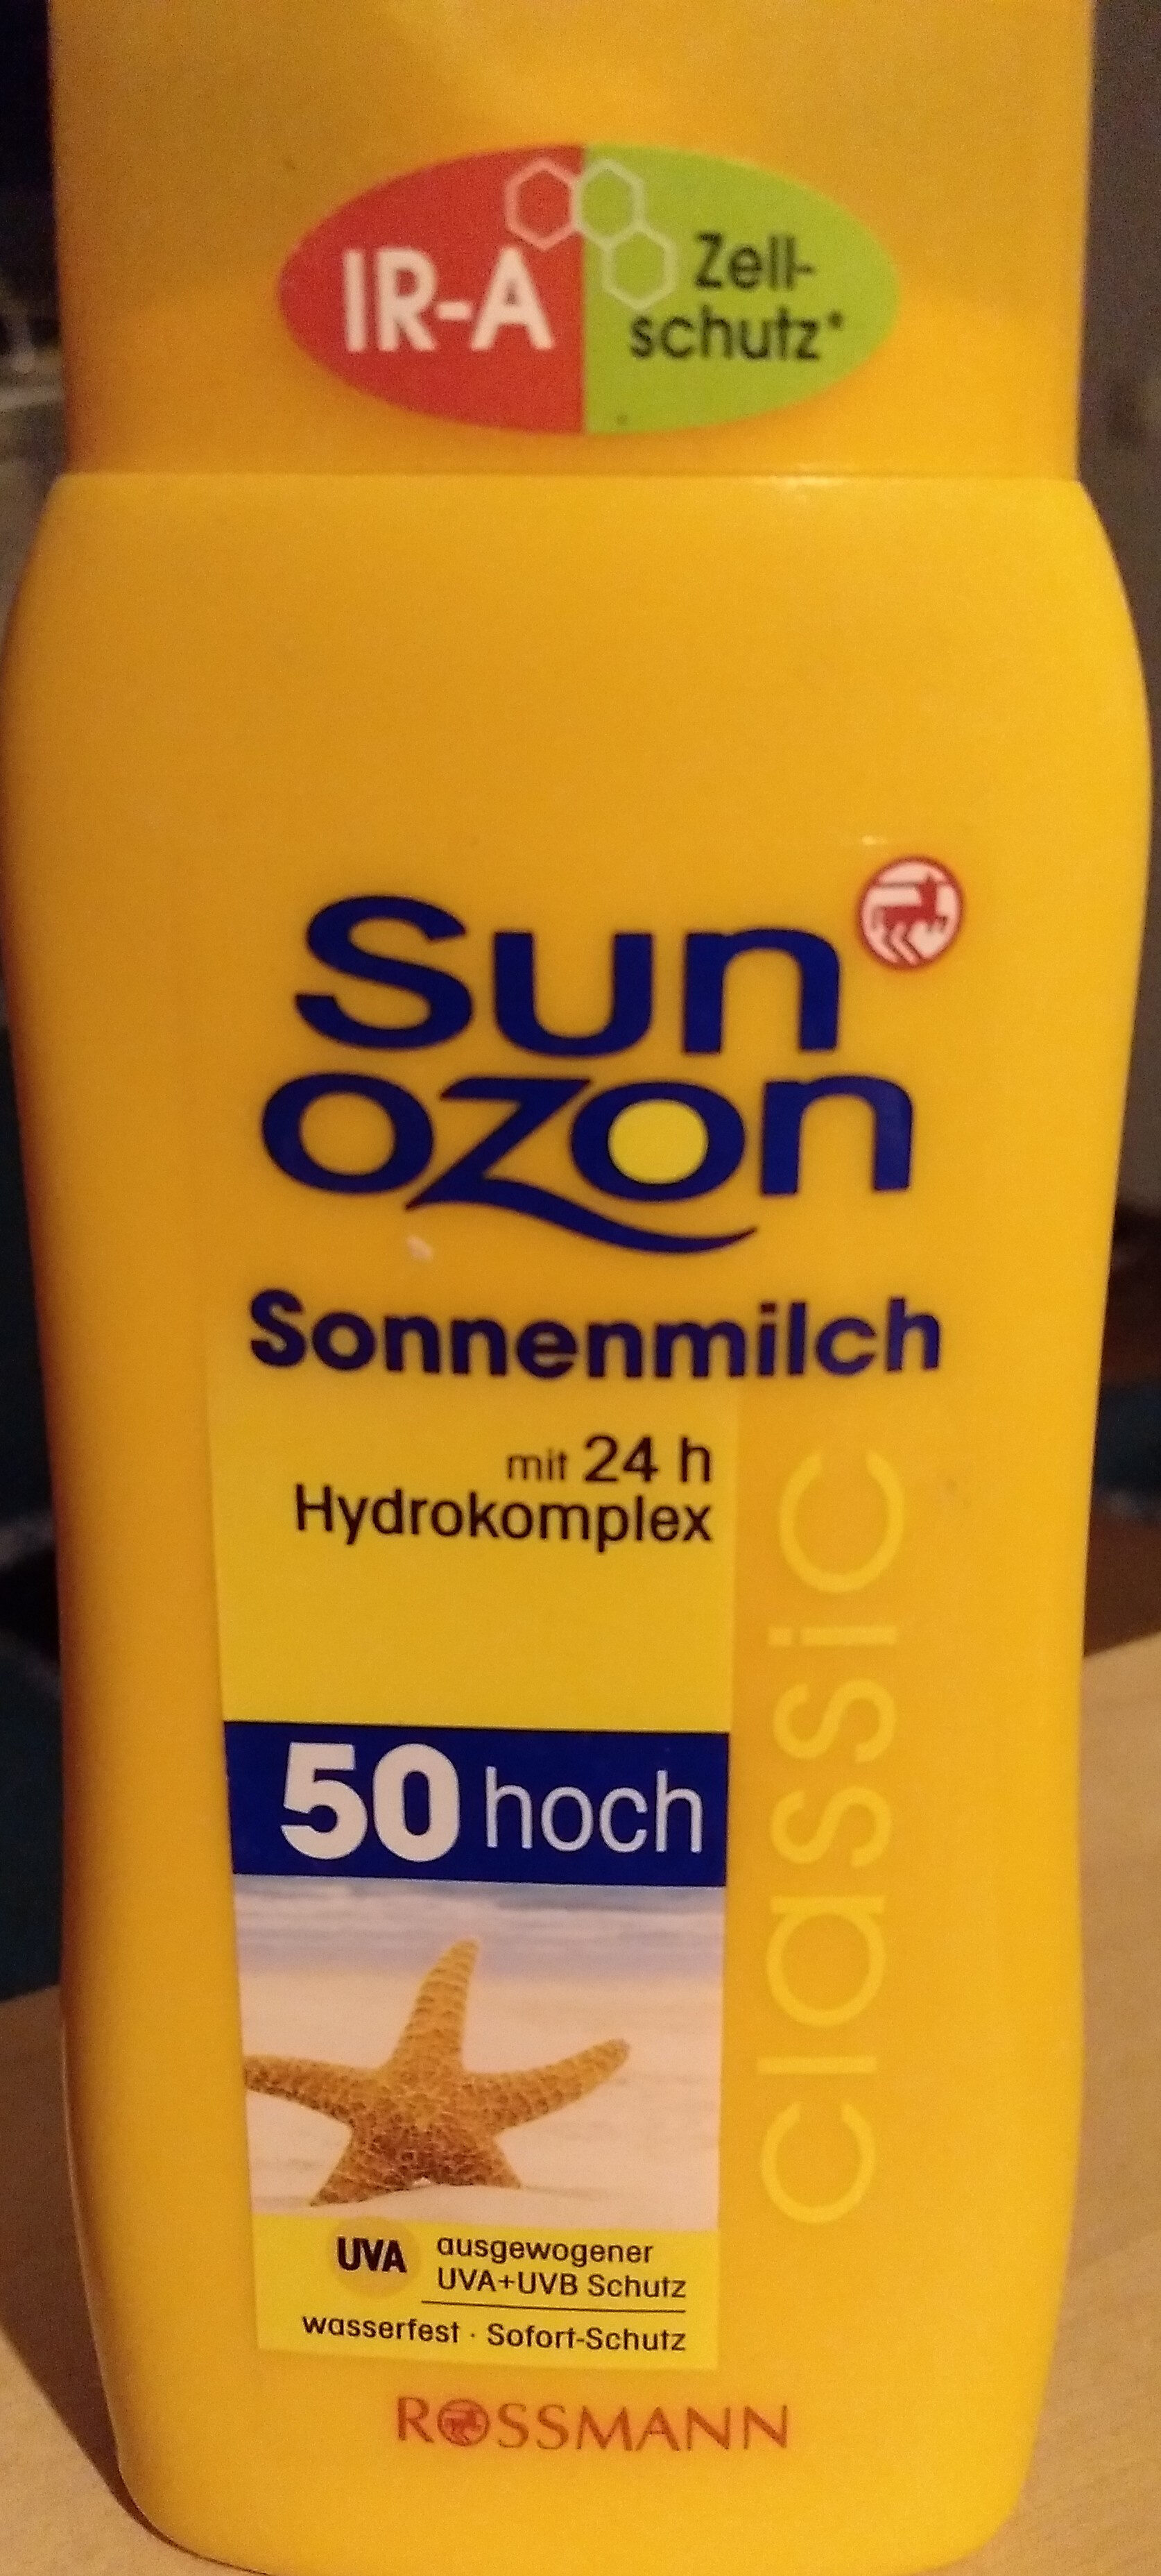 sun Ozon - Produkt - de